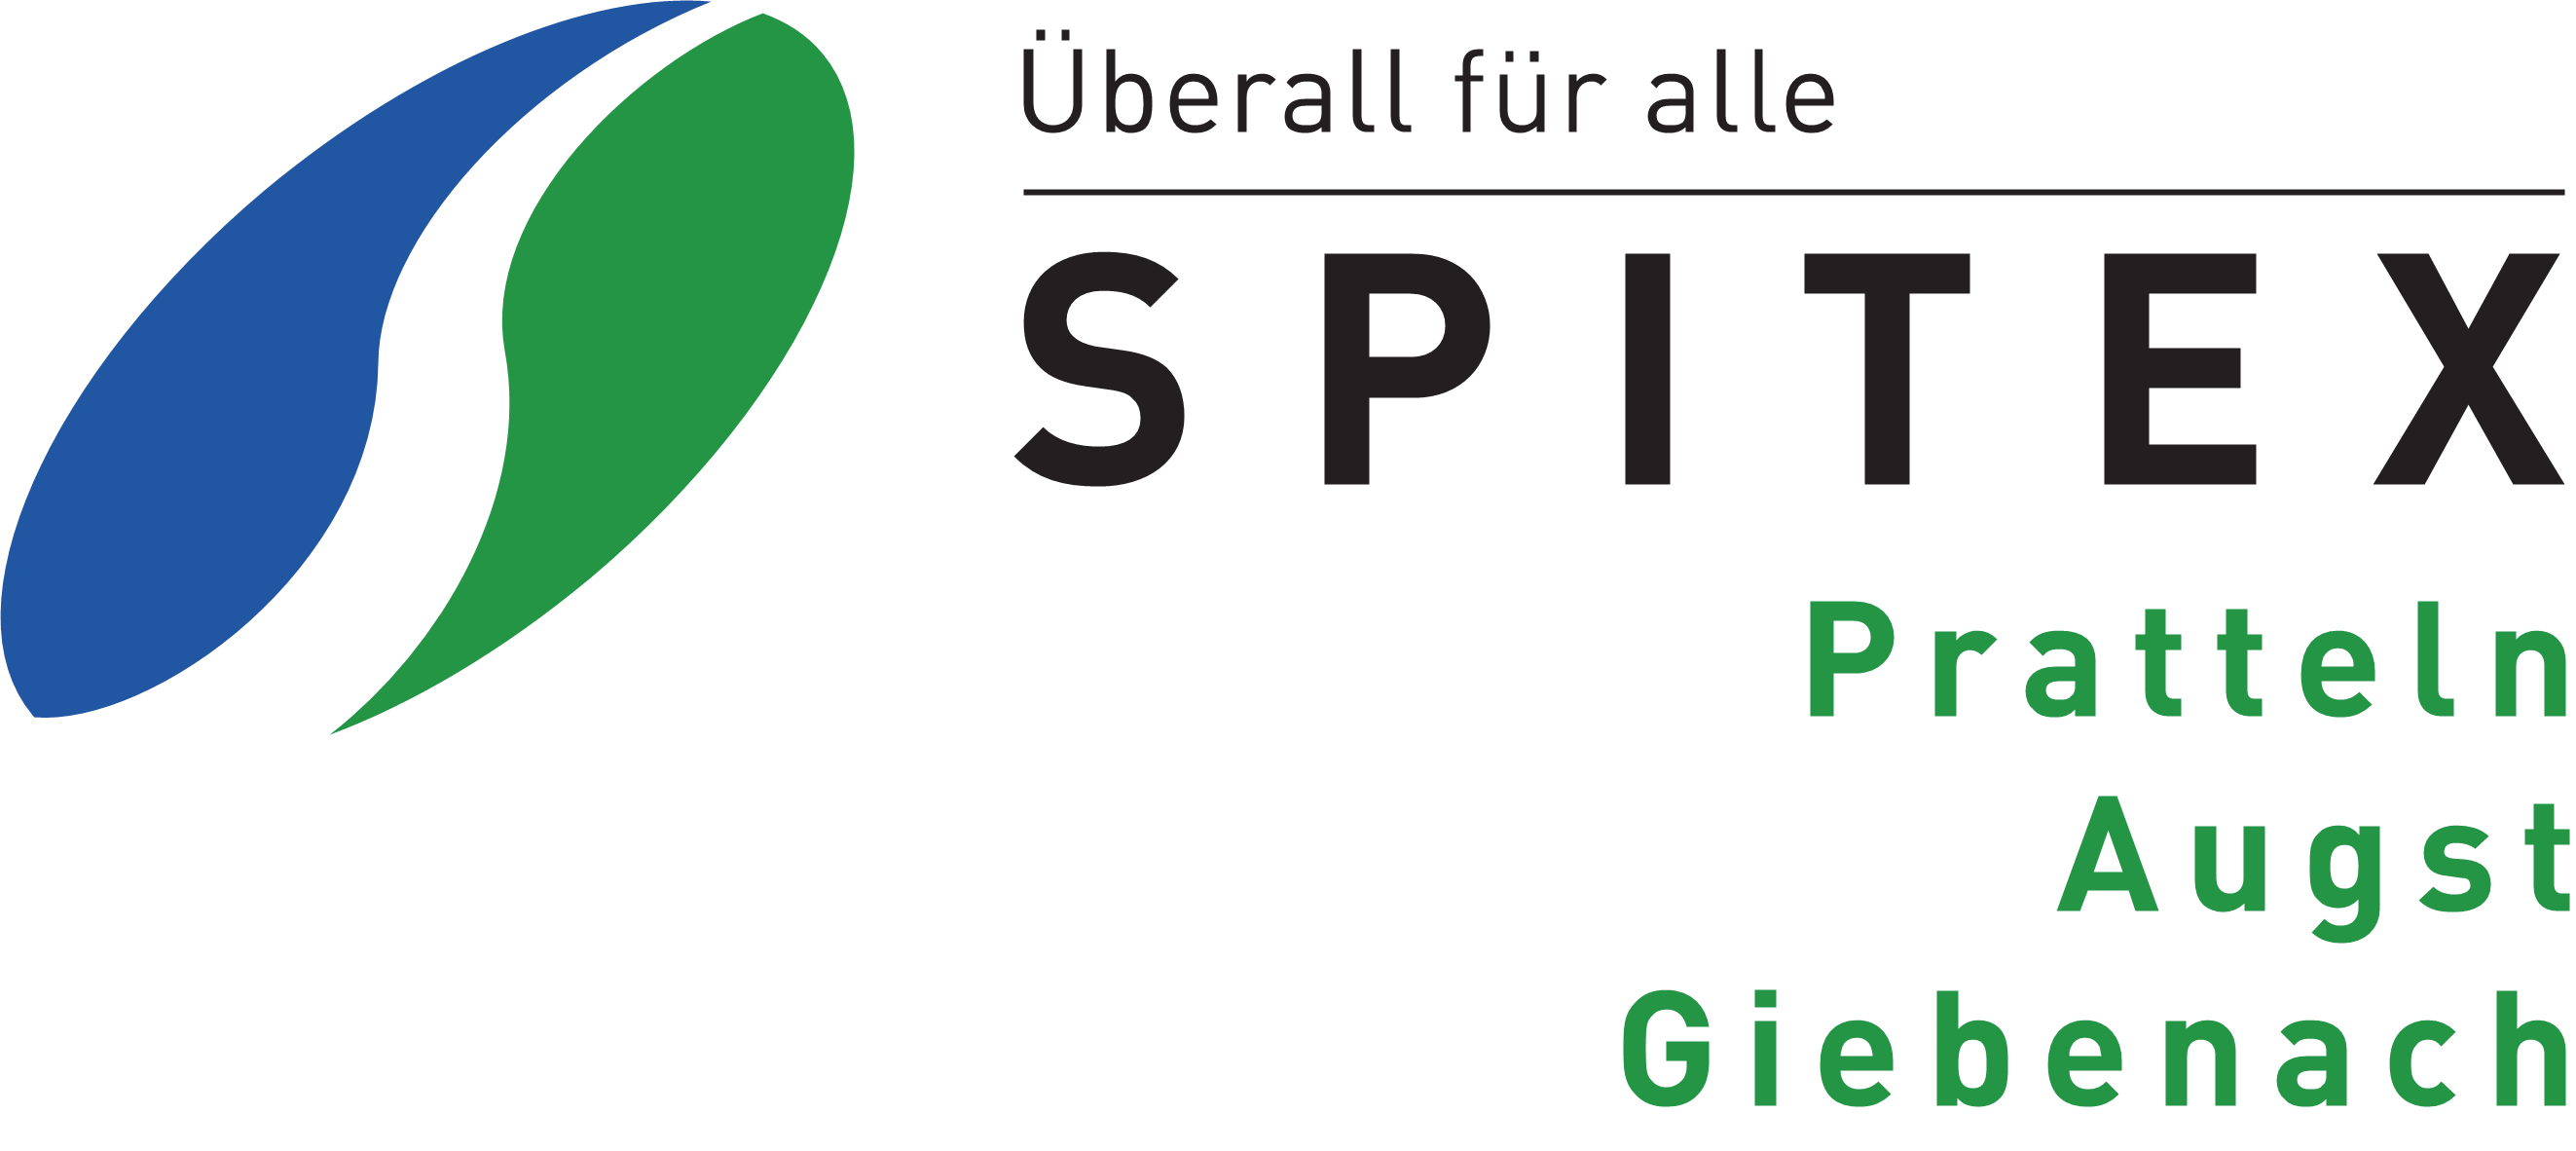 Spitex Pratteln-Augst-Giebenach GmbH